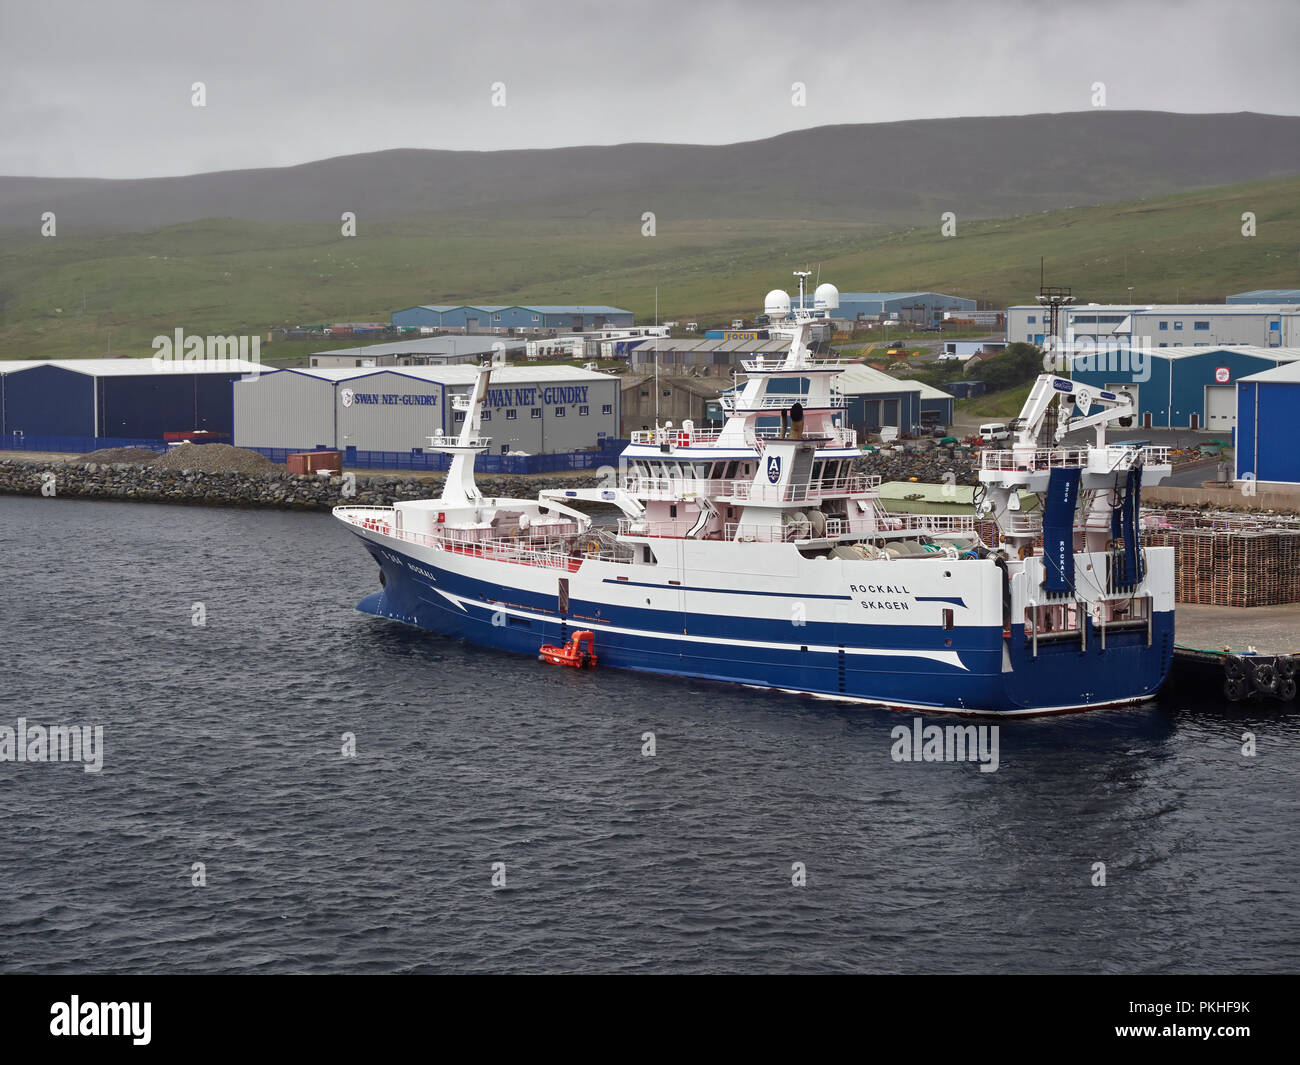 Le Rockall un chalutier de haute mer sont amarrés au quai de capture Shetland à Lerwick sur un jour brumeux en août, Shetland, en Écosse. Banque D'Images